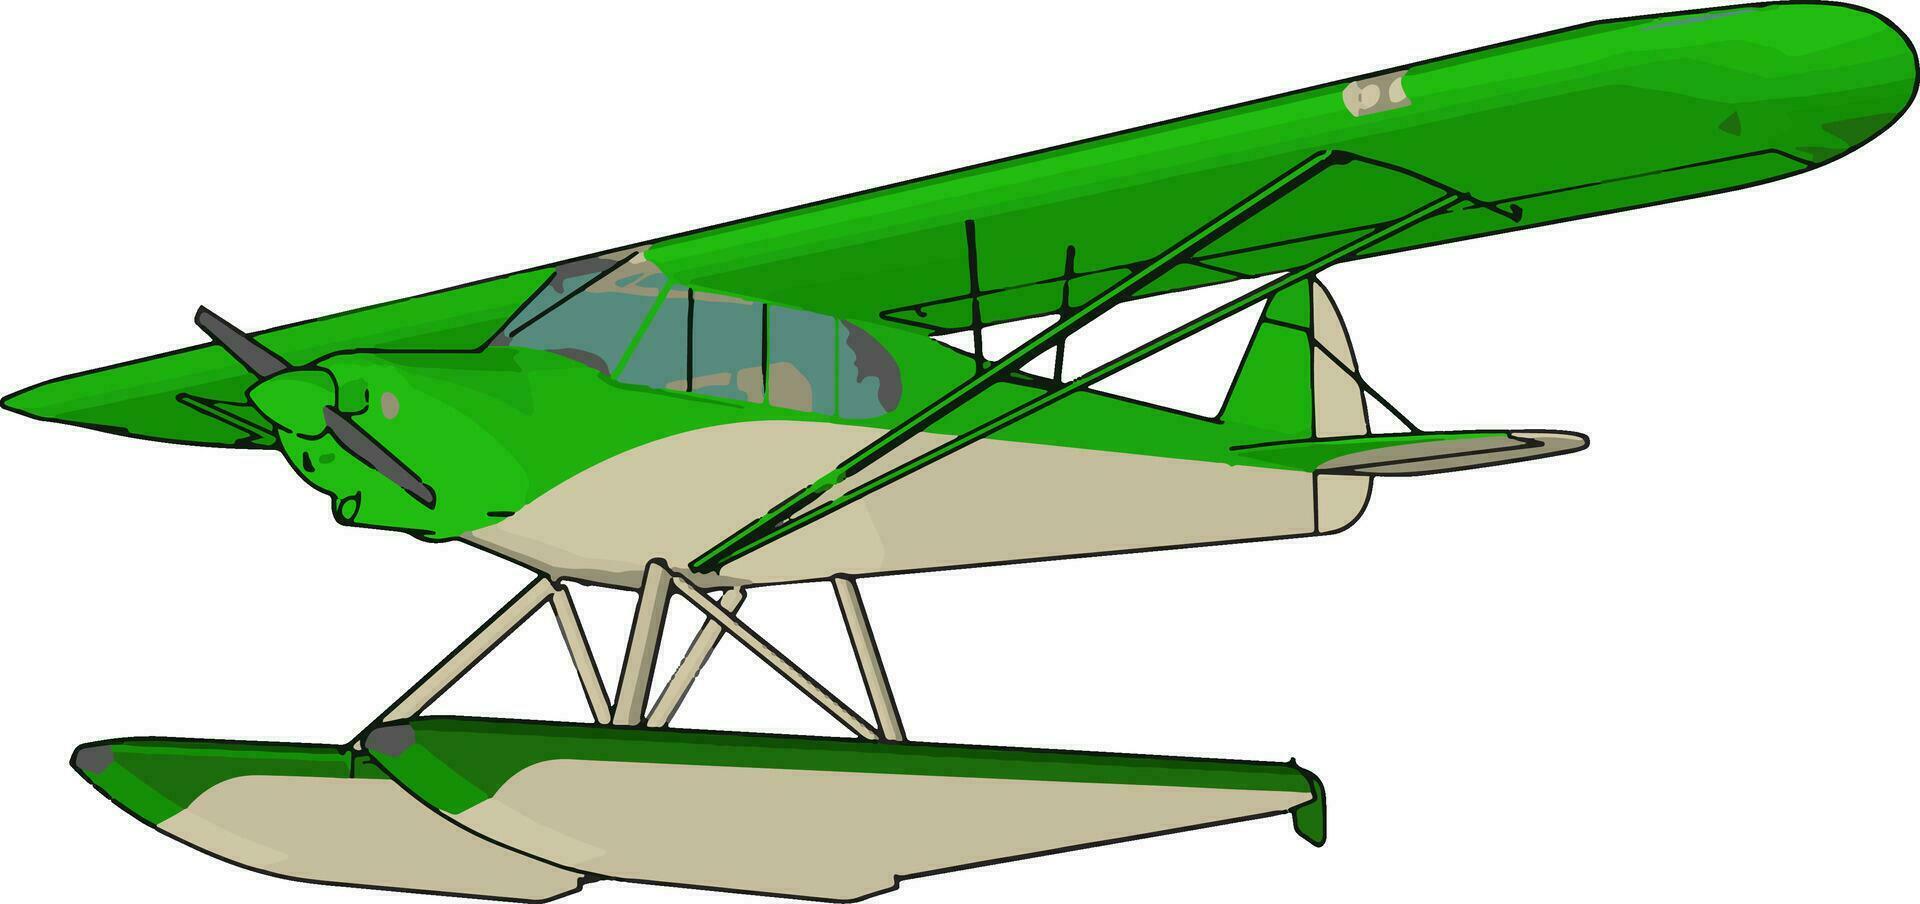 Green seaplane, illustration, vector on white background.